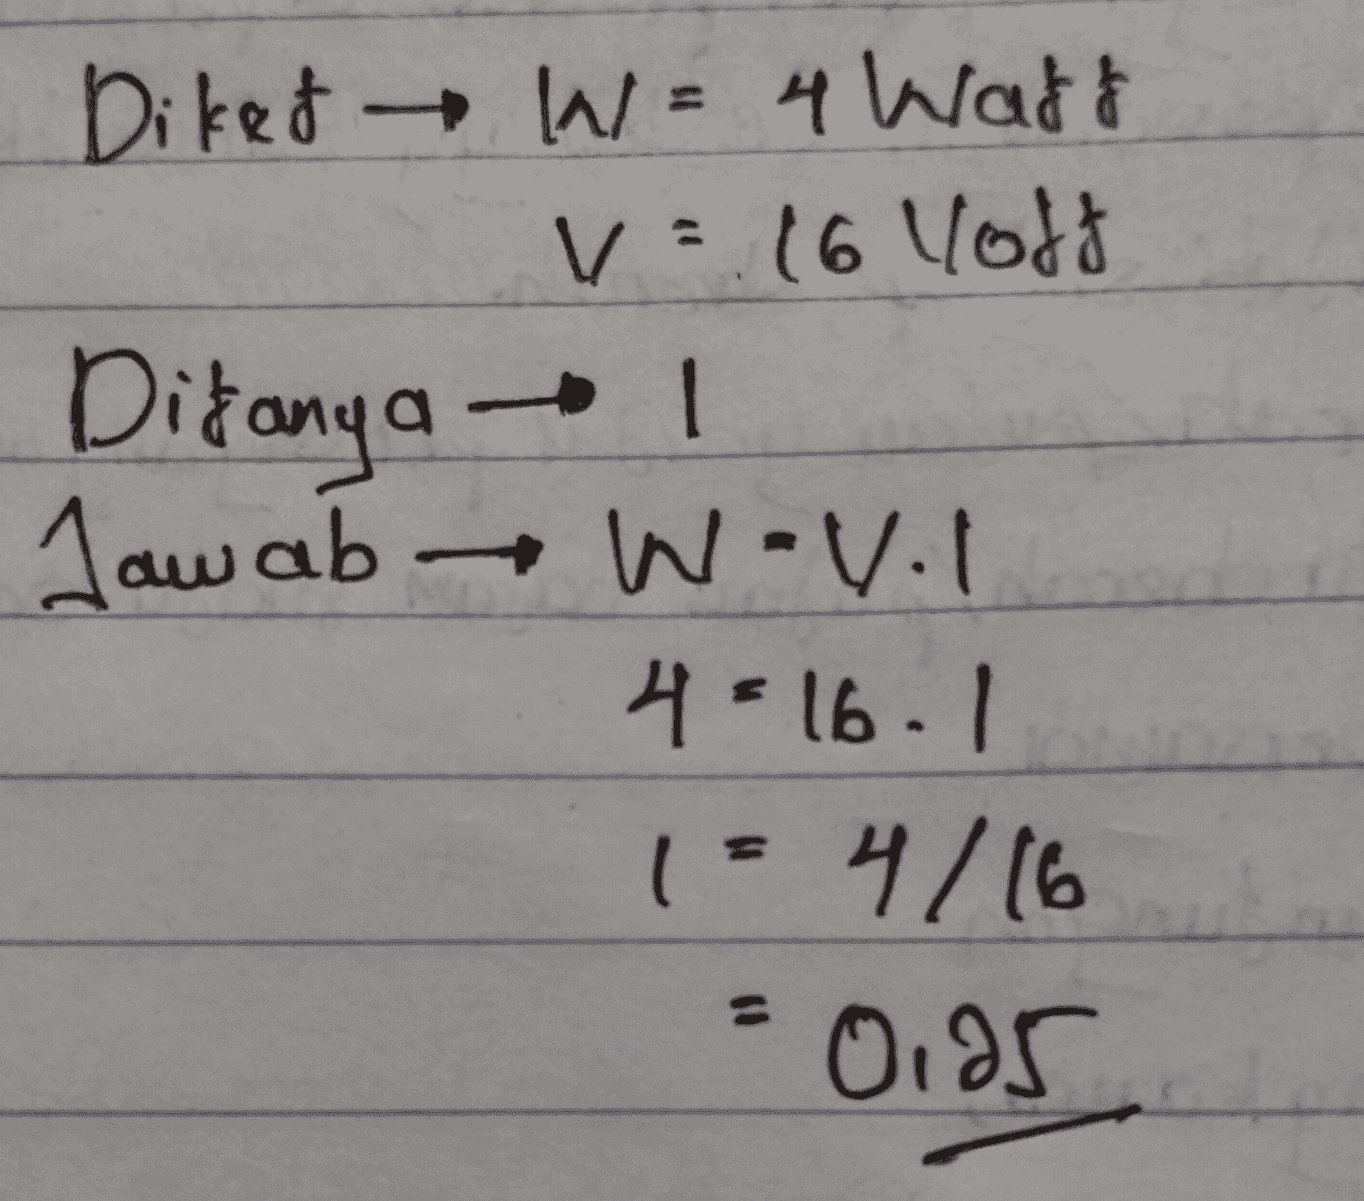 Diket W = 4 Wadt V = 16 lott Ditanya Jawab W-vol W 4= 16.1 1 = 4/16 = 0,95 